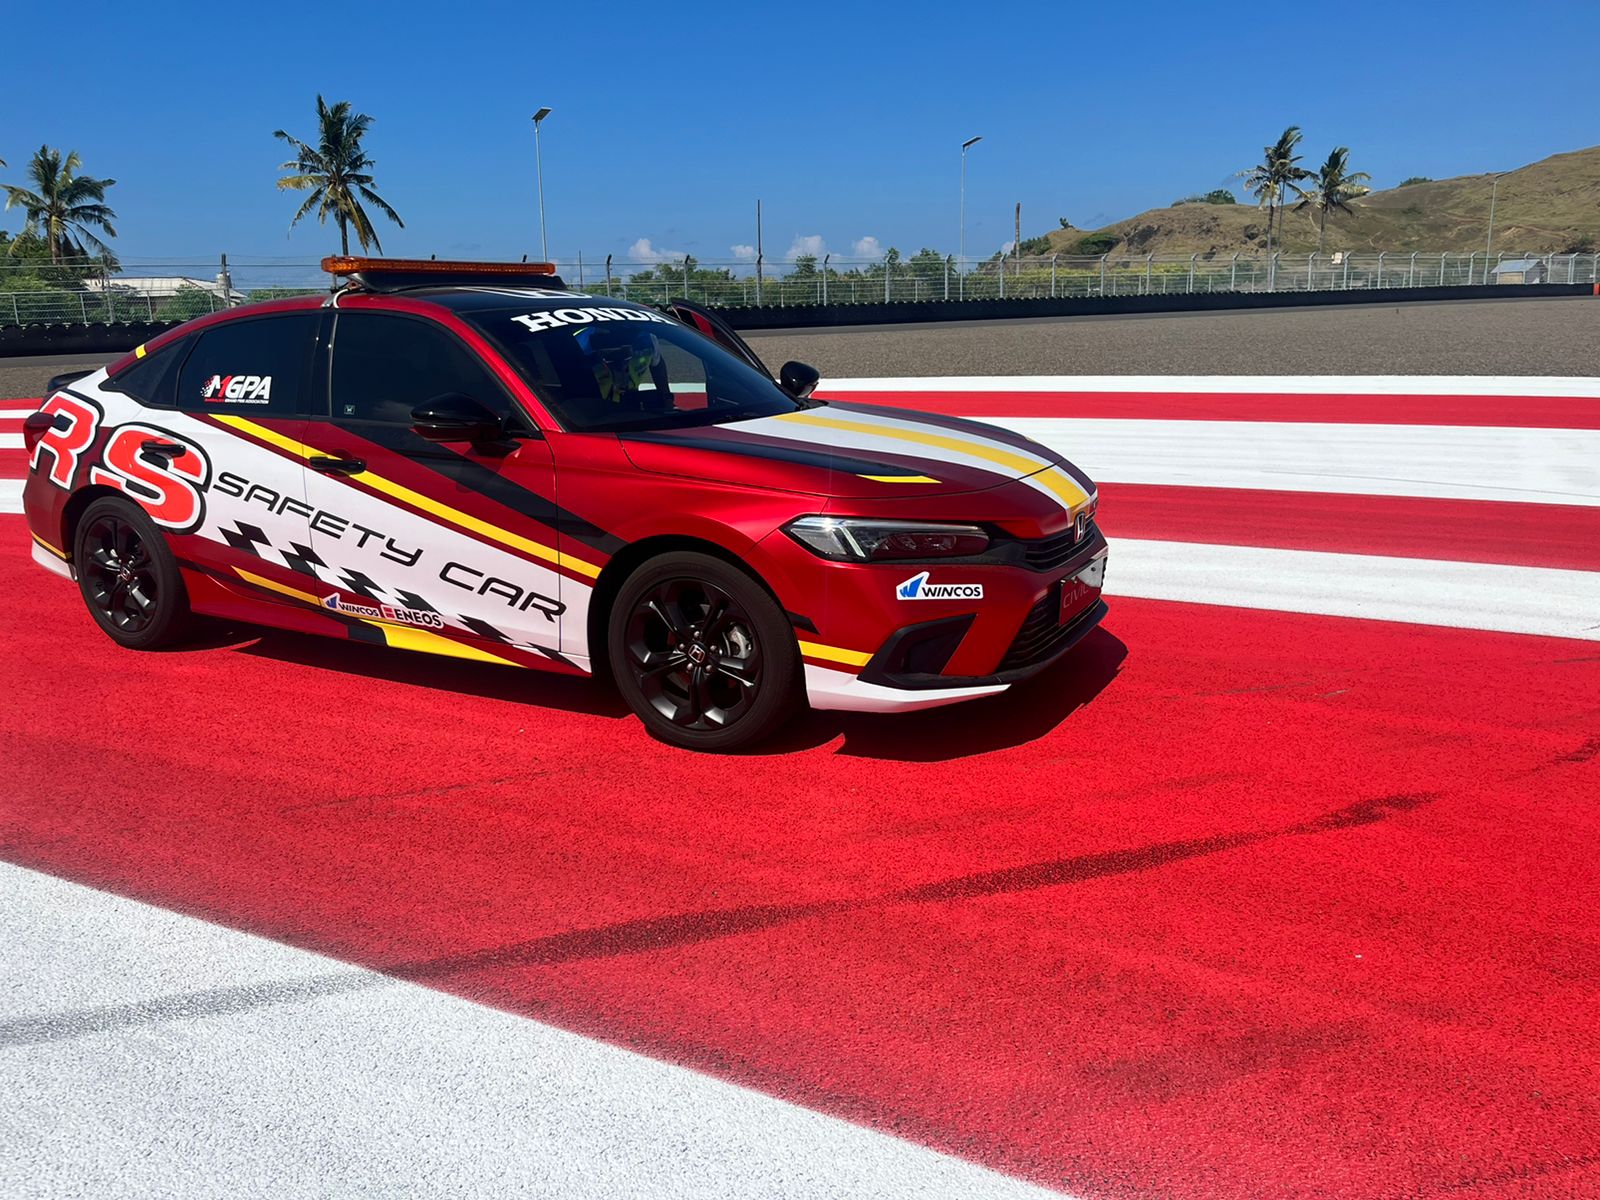 Tampilan All New Honda Civic RS sebagai safety car di ajang Mandalika Track Day 2022. | jakartainsight.com